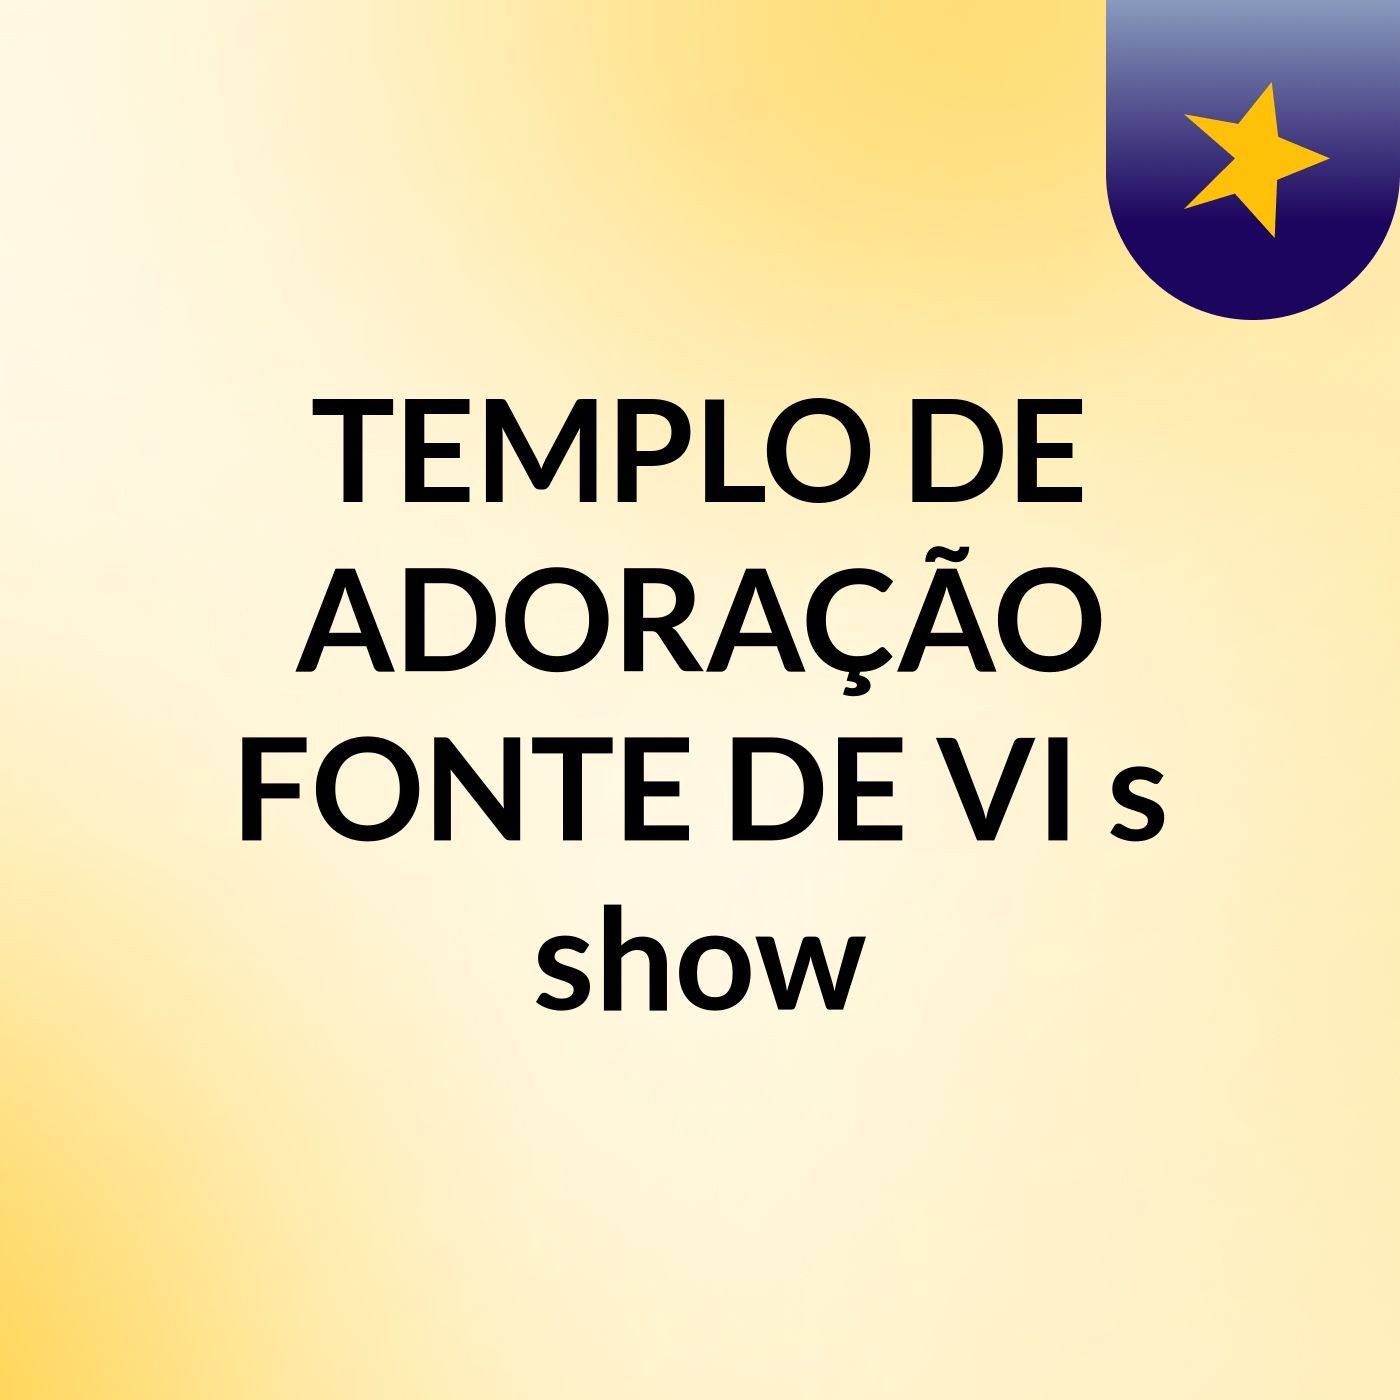 TEMPLO DE ADORAÇÃO FONTE DE VI's show